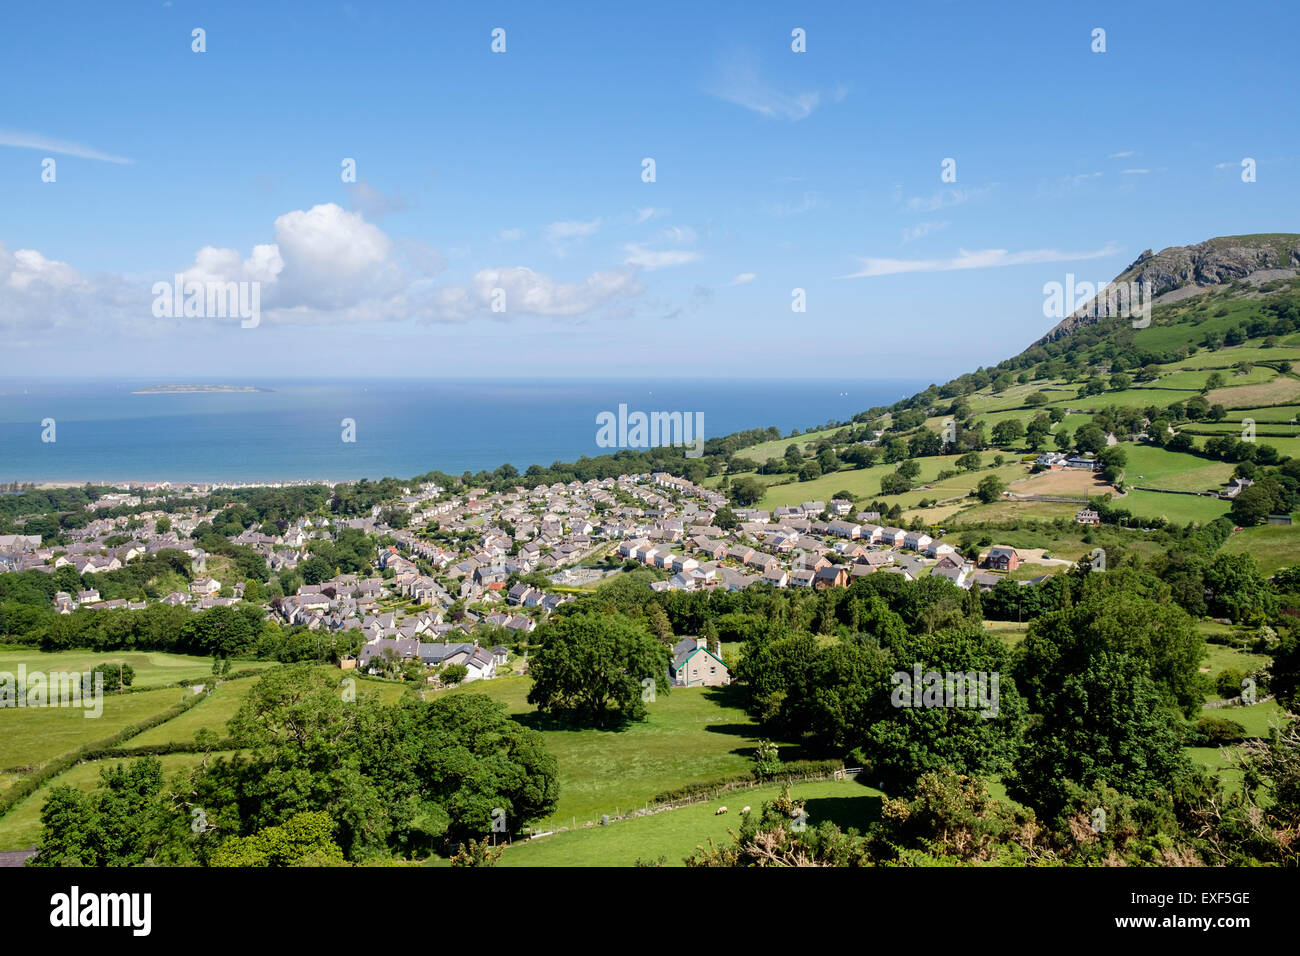 Blick auf walisischen Küste im Sommer von oben Dorf Llanfairfechan, Conwy, North Wales, UK, Großbritannien Stockfoto